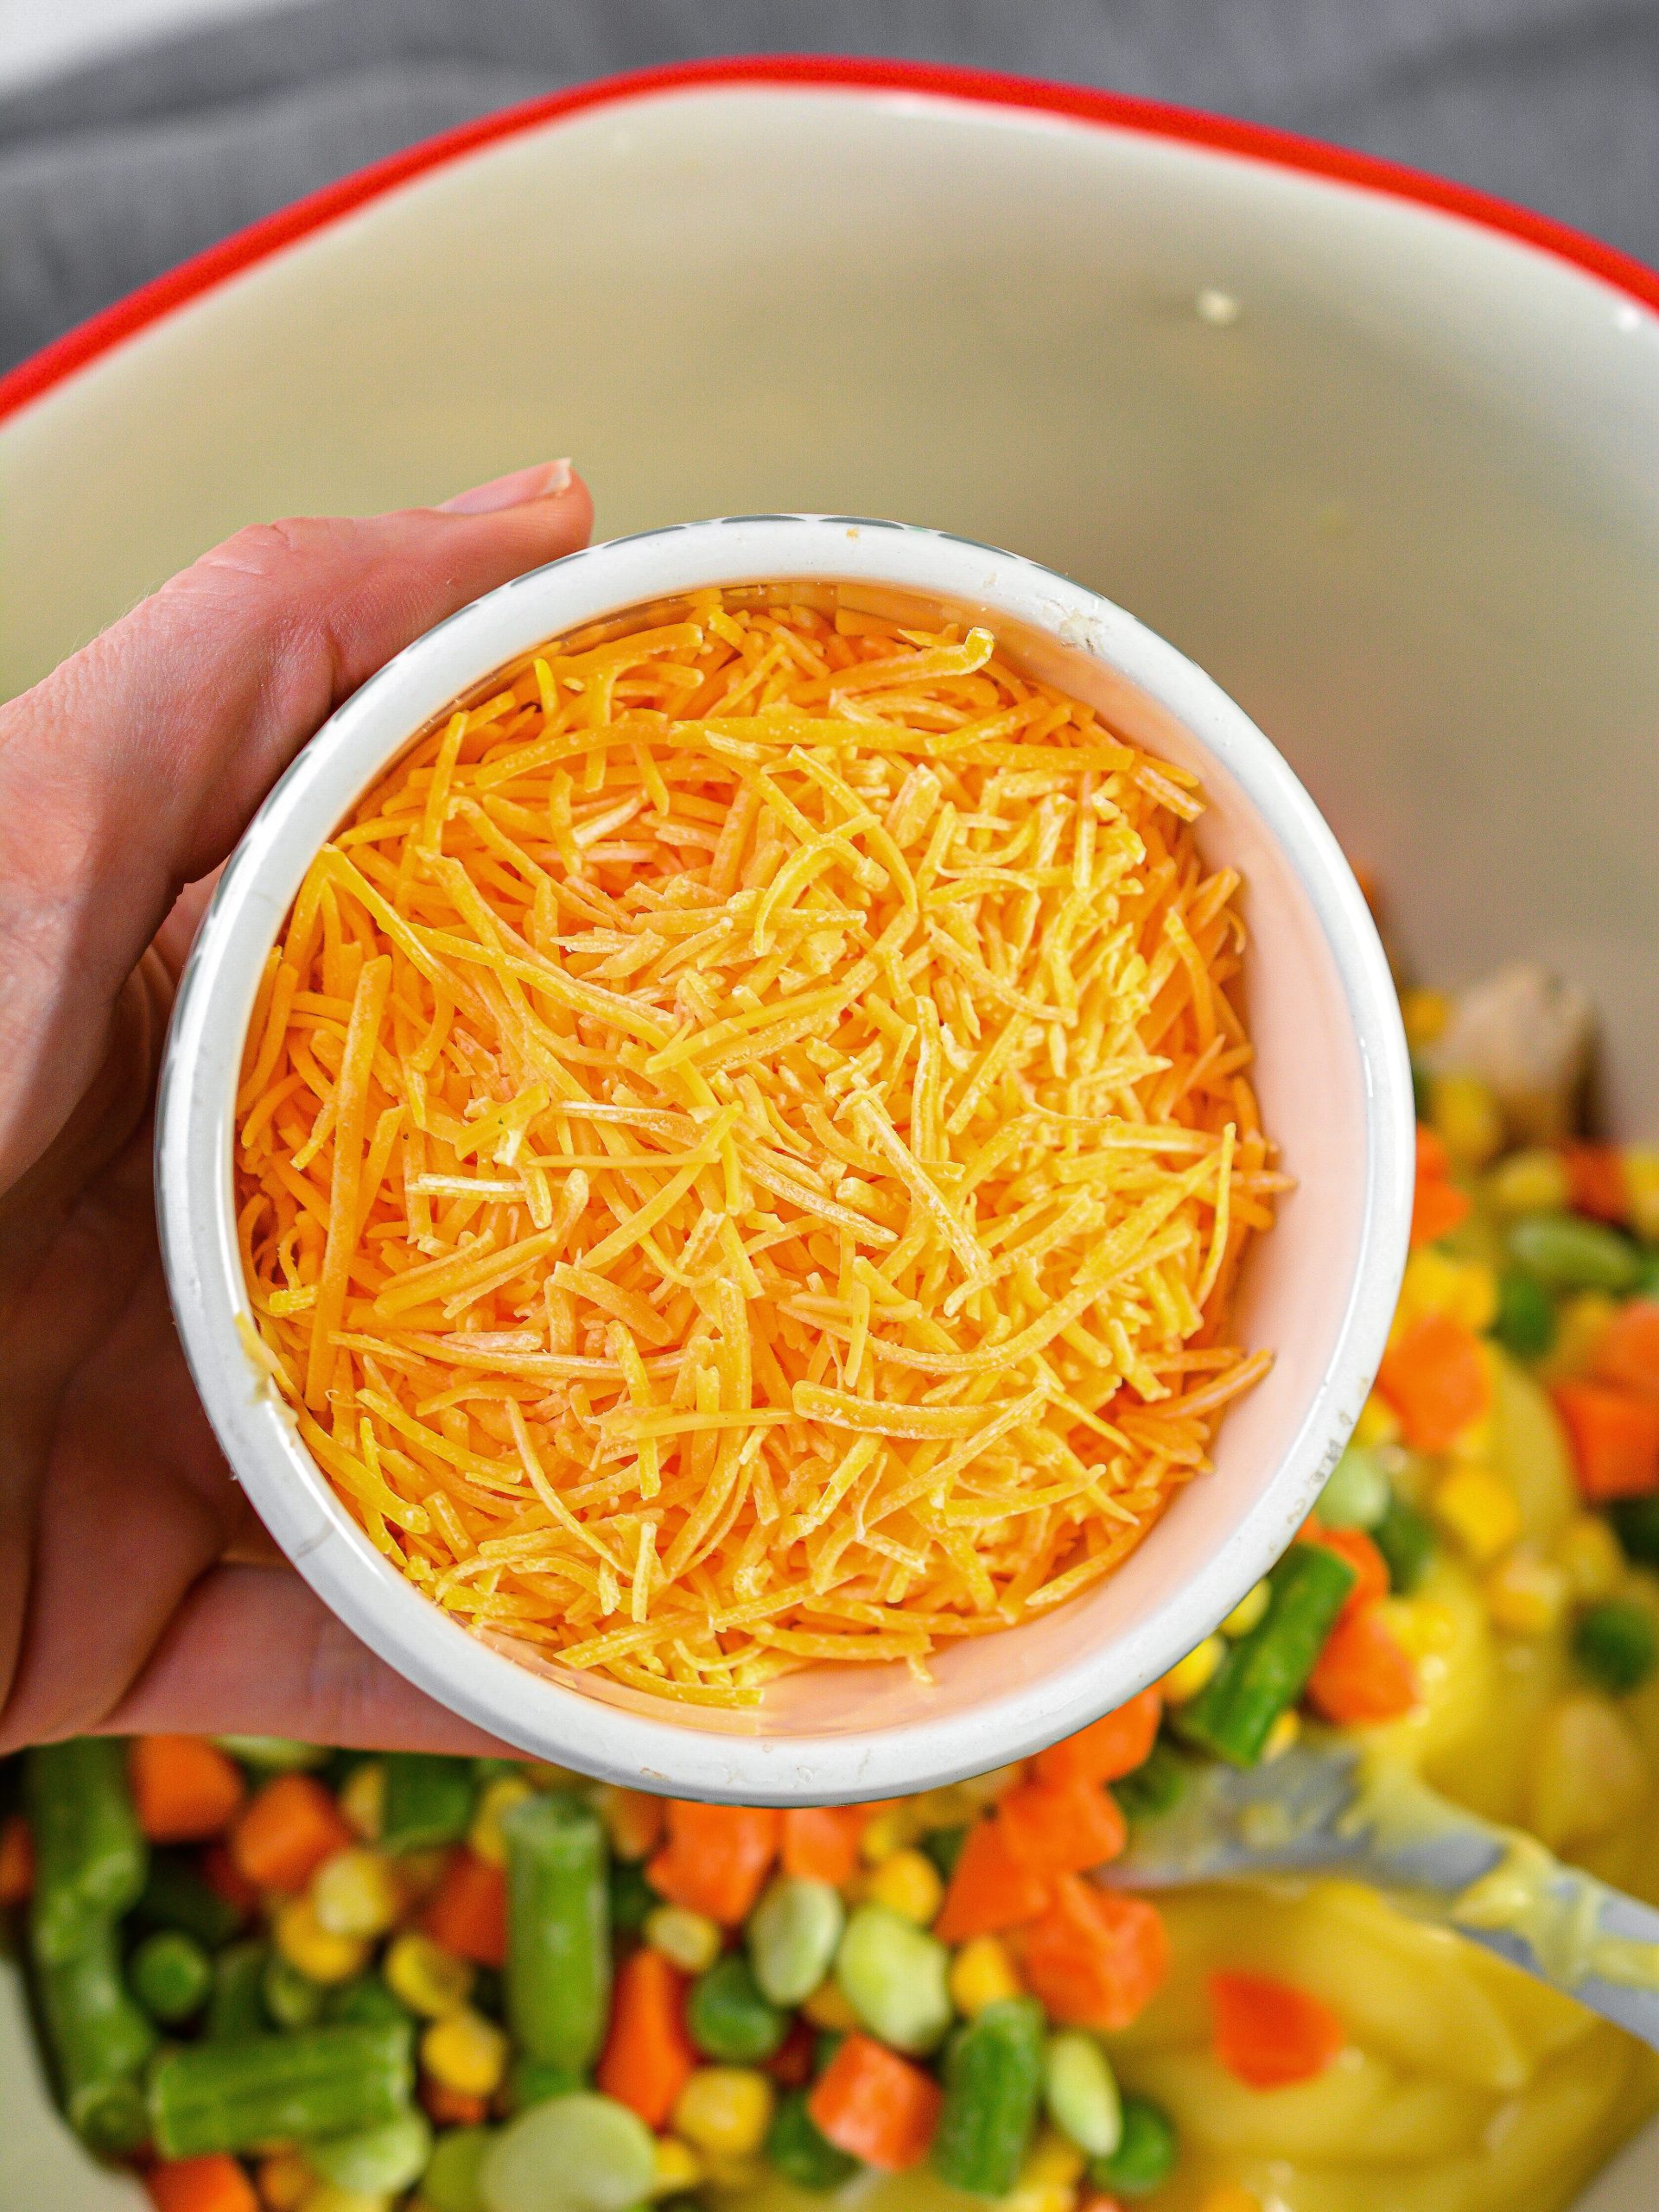 add 1 cup of shredded cheddar cheese.